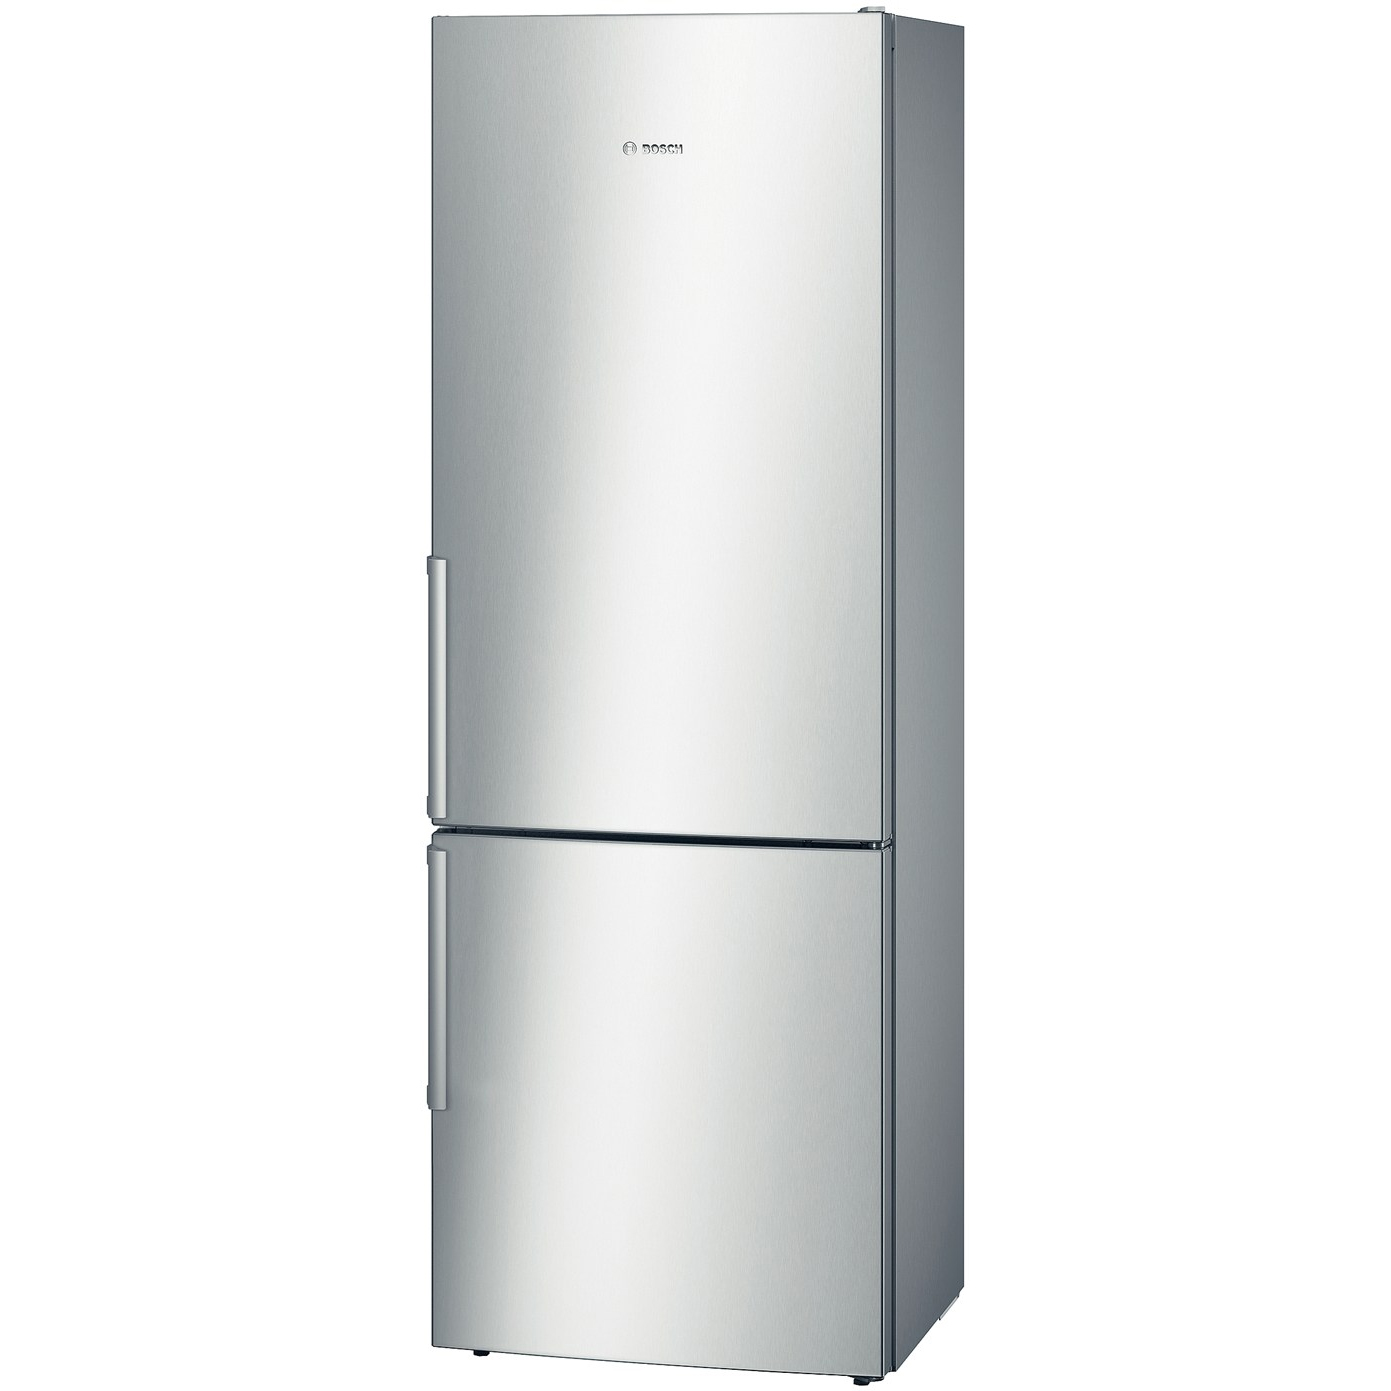  Combina frigorifica Bosch KGE49BI40, 413 l, Clasa A+++, Inox 